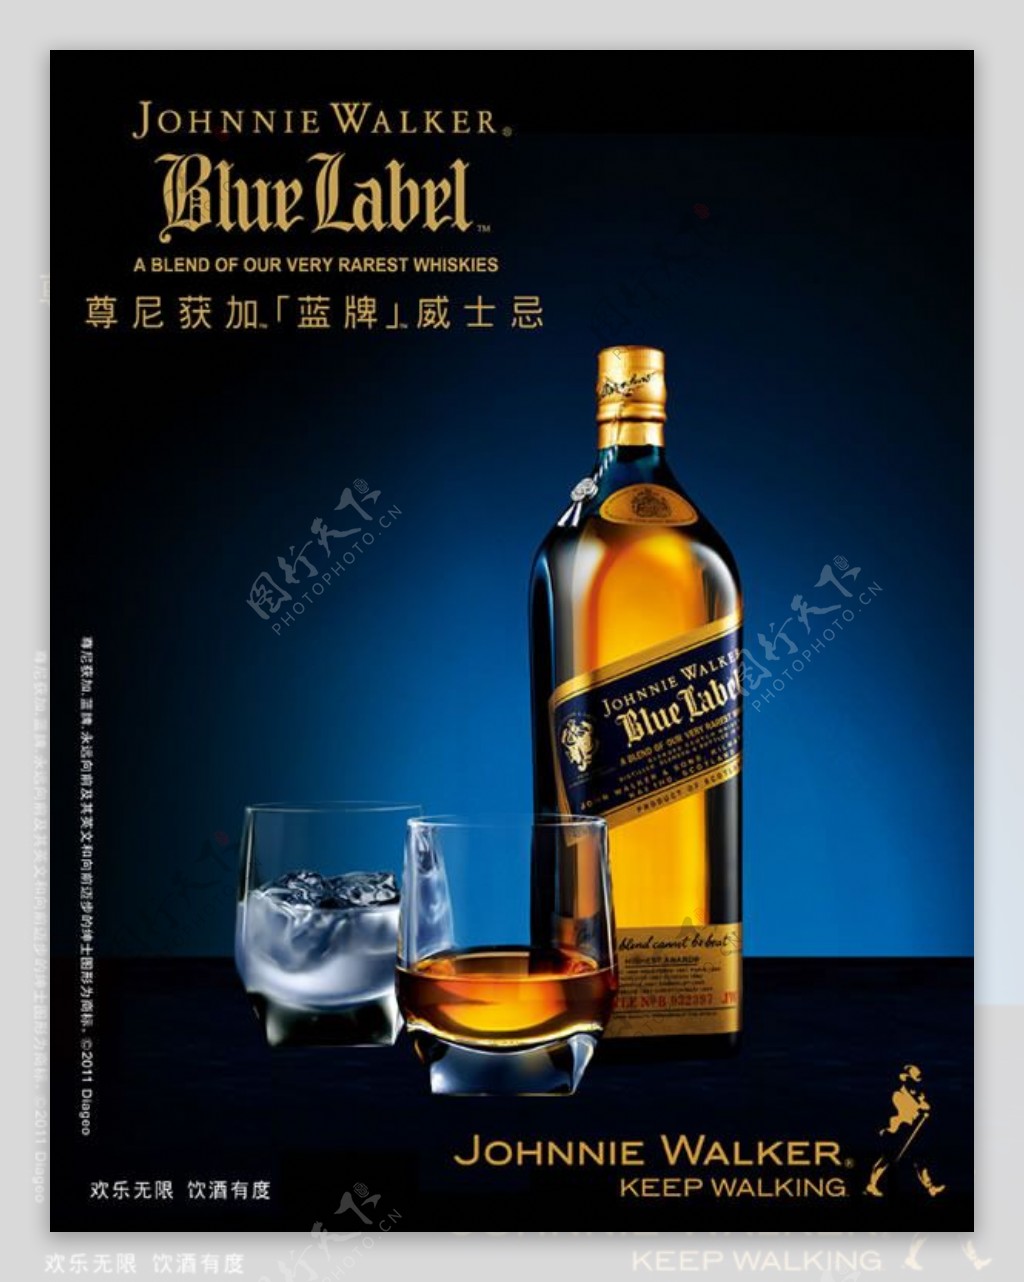 威士忌宣传广告设计psd素材